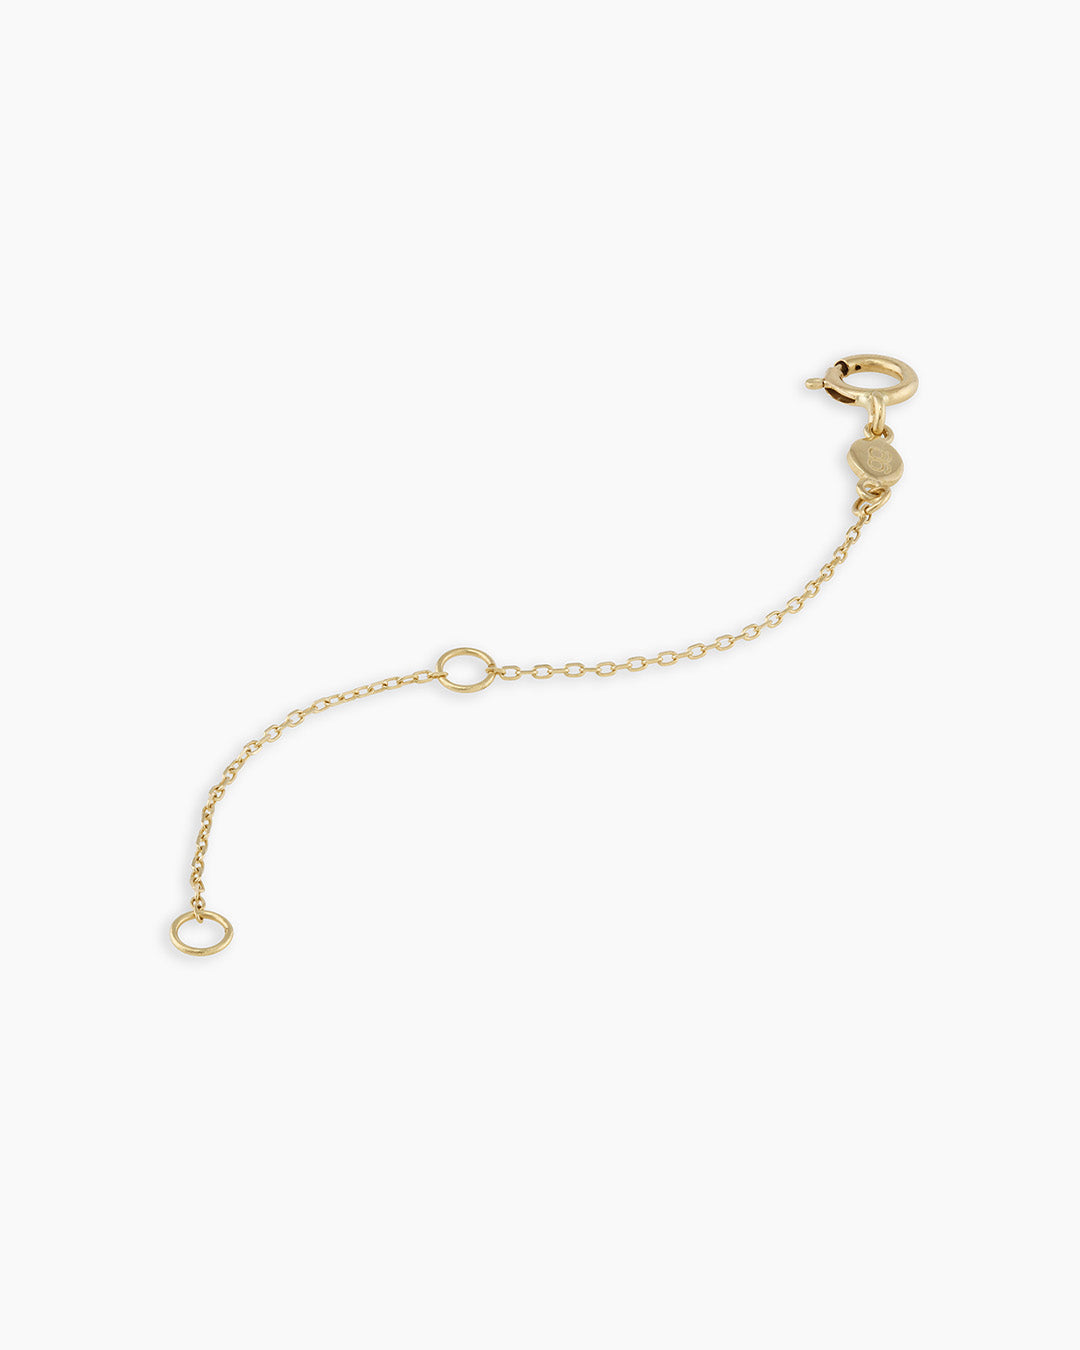 14k Solid Gold Necklace or Bracelet Extender, Removal Solid Gold